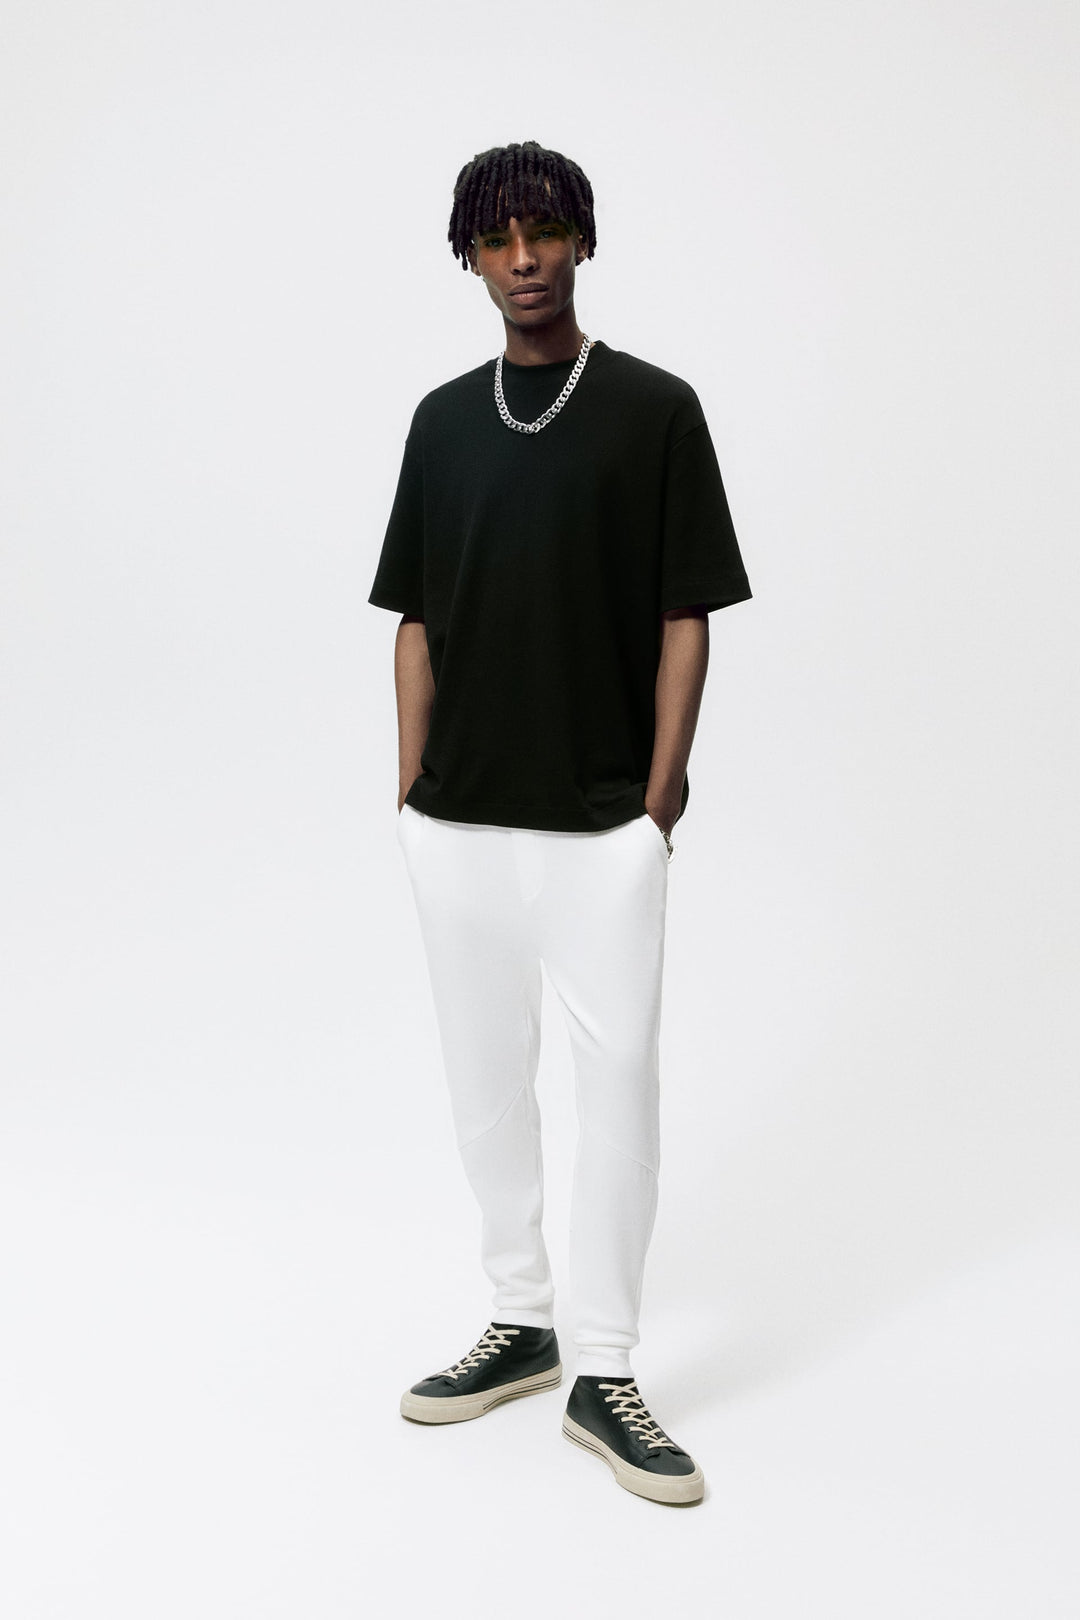 ZaraMan Knitted Jogg Polyester MixTrouser 4087/325/251